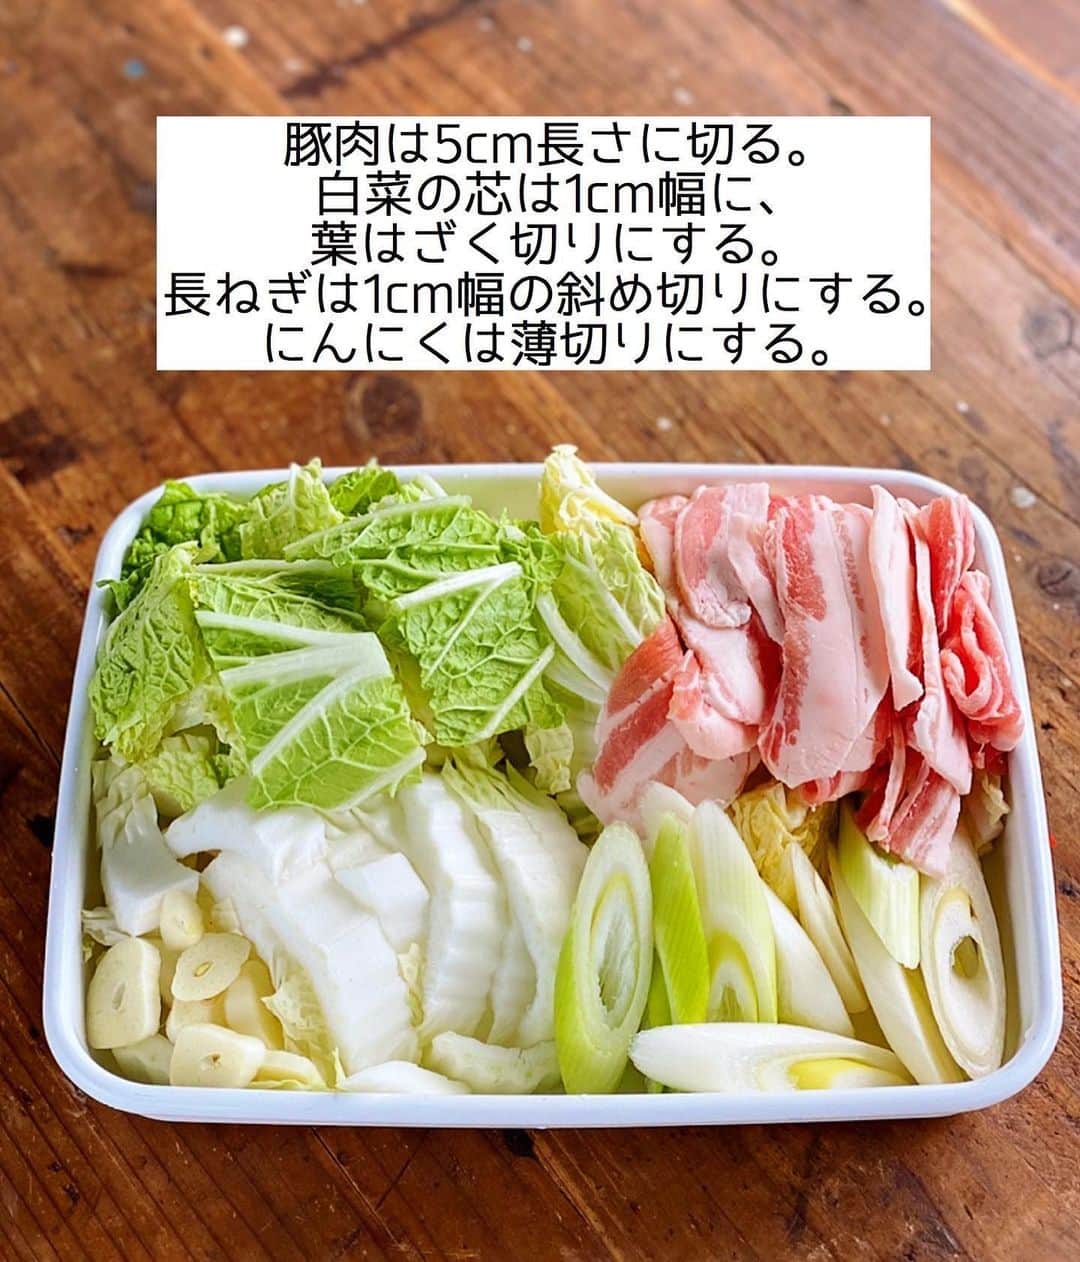 Mizuki【料理ブロガー・簡単レシピ】さんのインスタグラム写真 - (Mizuki【料理ブロガー・簡単レシピ】Instagram)「・﻿ 【#レシピ 】ーーーーーーーーーー﻿ ♡豚肉と白菜のにんにく味噌鍋♡﻿ ーーーーーーーーーーーーーーーー﻿ ﻿ ﻿ ﻿ おはようございます(*^^*)﻿ ﻿ 今日ご紹介させていただくのは﻿ \豚肉と白菜のにんにく味噌鍋/﻿ シンプルかつコク深いおつゆで﻿ 野菜がたっぷり食べられますよ〜♩﻿ ﻿ 白菜の代わりにキャベツを加えたり﻿ 具はあるもので代用OK！﻿ とっても簡単にできるので﻿ よかったらお試し下さいね(*^^*)﻿ ﻿ ﻿ ﻿ ＿＿＿＿＿＿＿＿＿＿＿＿＿＿＿＿＿＿＿＿﻿ 【2人分】﻿ 豚バラ薄切り肉...200g﻿ 白菜...1/4個(400g)﻿ 長ねぎ...1/2本﻿ にんにく...1かけ﻿ ●水...600ml﻿ ●味噌・みりん...各大2﻿ ●鶏がらスープ...大1/2﻿ ﻿ 1.豚肉は5cm長さに切る。白菜の芯は1cm幅に、葉はざく切りにする。長ねぎは1cm幅の斜め切りにする。にんにくは薄切りにする。﻿ 2.鍋に●とにんにくを入れて火にかけ、煮立ったら豚肉を加えてほぐす。続けて白菜と長ねぎを加えてフタをのせ、5分程煮る。﻿ ￣￣￣￣￣￣￣￣￣￣￣￣￣￣￣￣￣￣￣￣﻿ ﻿ ﻿ ﻿ 《ポイント》﻿ ♦︎ 吹きこぼれないよう火加減に注意して下さい☆﻿ ♦︎豚しゃぶしゃぶ用のお肉を使用しても◎﻿ ♦︎具はアレンジOK♩きのこやキャベツ、豆腐や油揚げもよく合います♩﻿ ♦︎私は合わせ味噌を使用しています♩﻿ ﻿ ﻿ ﻿ ﻿ ﻿ ﻿ ﻿ ﻿ ﻿ ⭐️発売中⭐️3刷重版が決まりました😭﻿ 本当にありがとうございます(涙)﻿ _____________________________________﻿ \15分でいただきます/﻿ 📕#Mizukiの2品献立 📕﻿ (9月24日発売・マガジンハウス)﻿ ￣￣￣￣￣￣￣￣￣￣￣￣￣￣￣￣￣﻿ ﻿ 忙しい私たちには﻿ 2品くらいがちょうどいい！﻿ 『しんどくない献立、考えました』﻿ ￣￣￣￣￣￣￣￣￣￣￣￣￣￣￣￣﻿ ﻿ ーーーーーPART.1 ーーーーー﻿ 【Mizukiのお墨つき！２品献立ベスト10】﻿ 約15分でできる10献立をご紹介！﻿ メインは全部フライパン﻿ 副菜はレンチンor混ぜるだけ♡﻿ ﻿ ーーーーーPART.2 ーーーーー﻿ 【フライパンひとつ！今夜のメインおかず】﻿ 献立の主役になる肉や魚のおかず50品！﻿ Part3の副菜と組み合わせれば﻿ 献立のバリエーションが広がりますよ♩﻿ ﻿ ーーーーー PART.3 ーーーーー﻿ 【合間に作れる！ 野菜別かんたん副菜】﻿ レンチンor和えるだけの副菜レシピを﻿ 素材別にたっぷり収録♩﻿ ﻿ ーーーーー番外編ーーーーー﻿ 【ひとつで満足！ご飯＆麺】﻿ 【具だくさん！おかずスープ】﻿ 【オーブンいらずのおやつレシピ】﻿ ￣￣￣￣￣￣￣￣￣￣￣￣￣￣￣￣￣￣﻿ (ハイライトにリンク🔗あります💗)﻿ ﻿ ﻿ ﻿ ﻿ ﻿ ＿＿＿＿＿＿＿＿＿＿＿＿＿＿＿＿＿＿﻿ 🔔テレビ出演のお知らせ🔔﻿ 【NHK Eテレ #まる得マガジン 】﻿ 2回目の放送が始まっています✨﻿ 昼(11：55〜 月-木) ﻿ 俳優の武田航平さん﻿ (@kouhei_takeda.official )と一緒に﻿ 絶品おやつから意外なランチまで﻿ たくさん作らせていただきますよ♩﻿ ﻿ ＊NHKテキスト発売中↓📕﻿ 【ホットケーキミックスで﻿ 絶品おやつ&意外なランチ】﻿ ￣￣￣￣￣￣￣￣￣￣￣￣￣￣￣￣￣￣﻿ ﻿ ﻿ ﻿ ﻿ ﻿ ＿＿＿＿＿＿＿＿＿＿＿＿＿＿＿＿＿＿﻿ レシピを作って下さった際や﻿ レシピ本についてのご投稿には﻿ タグ付け( @mizuki_31cafe )して﻿ お知らせいただけると嬉しいです😊💕﻿ ￣￣￣￣￣￣￣￣￣￣￣￣￣￣￣￣￣￣﻿ ﻿ ﻿ ﻿ ﻿ #豚肉#白菜#味噌鍋#鍋#Mizuki#簡単レシピ#時短レシピ#節約レシピ#料理#フーディーテーブル#マカロニメイト#おうちごはん#デリスタグラマー#料理好きな人と繋がりたい#食べ物#料理記録#おうちごはんlover#写真好きな人と繋がりたい#foodpic#cooking#recipe#lin_stagrammer#foodporn#yummy#f52grams#豚肉と白菜のにんにく味噌鍋m」12月1日 7時48分 - mizuki_31cafe